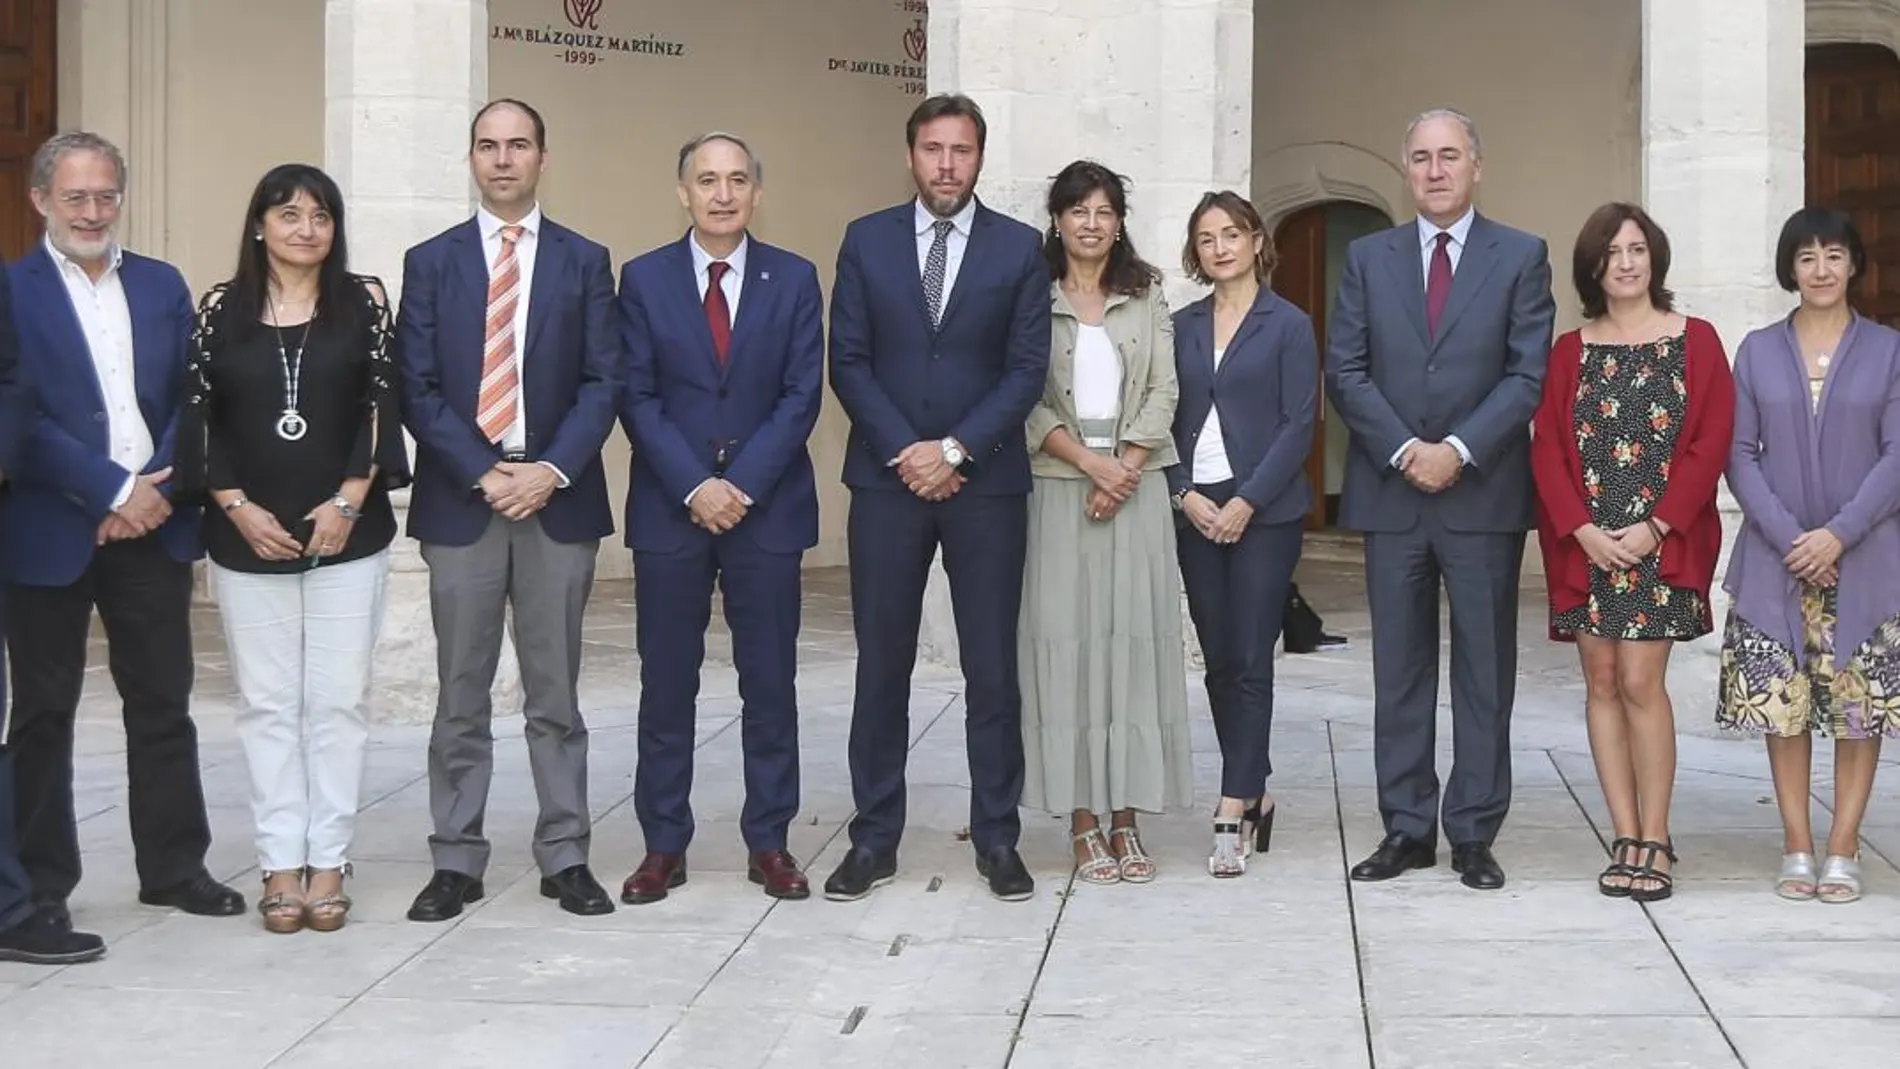 Los equipos del Ayuntamiento de Valladolid y de la UVA se reúnen para avanzar en la estrategia “Valladolid Ciudad Universitaria".